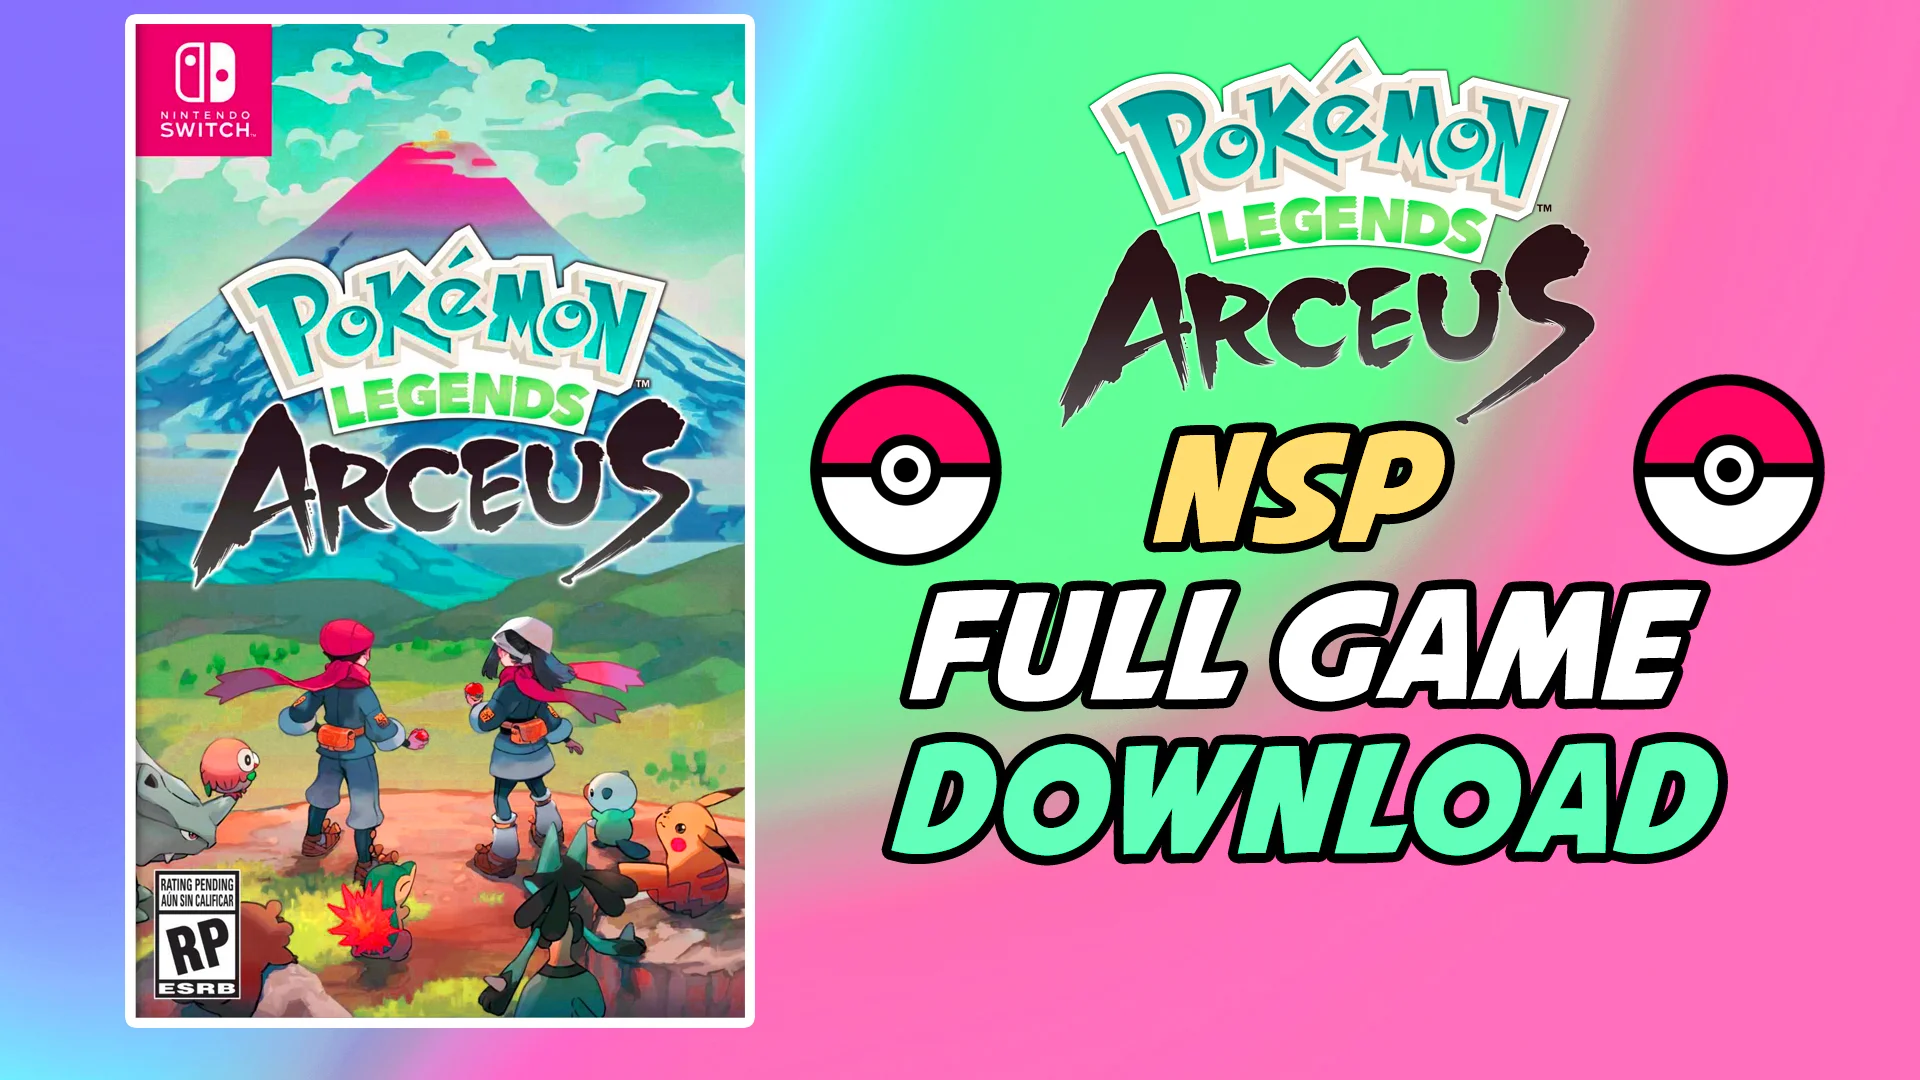 Pokémon Legends Arceus PC Download � Yuzu Installation Guide � on Vimeo